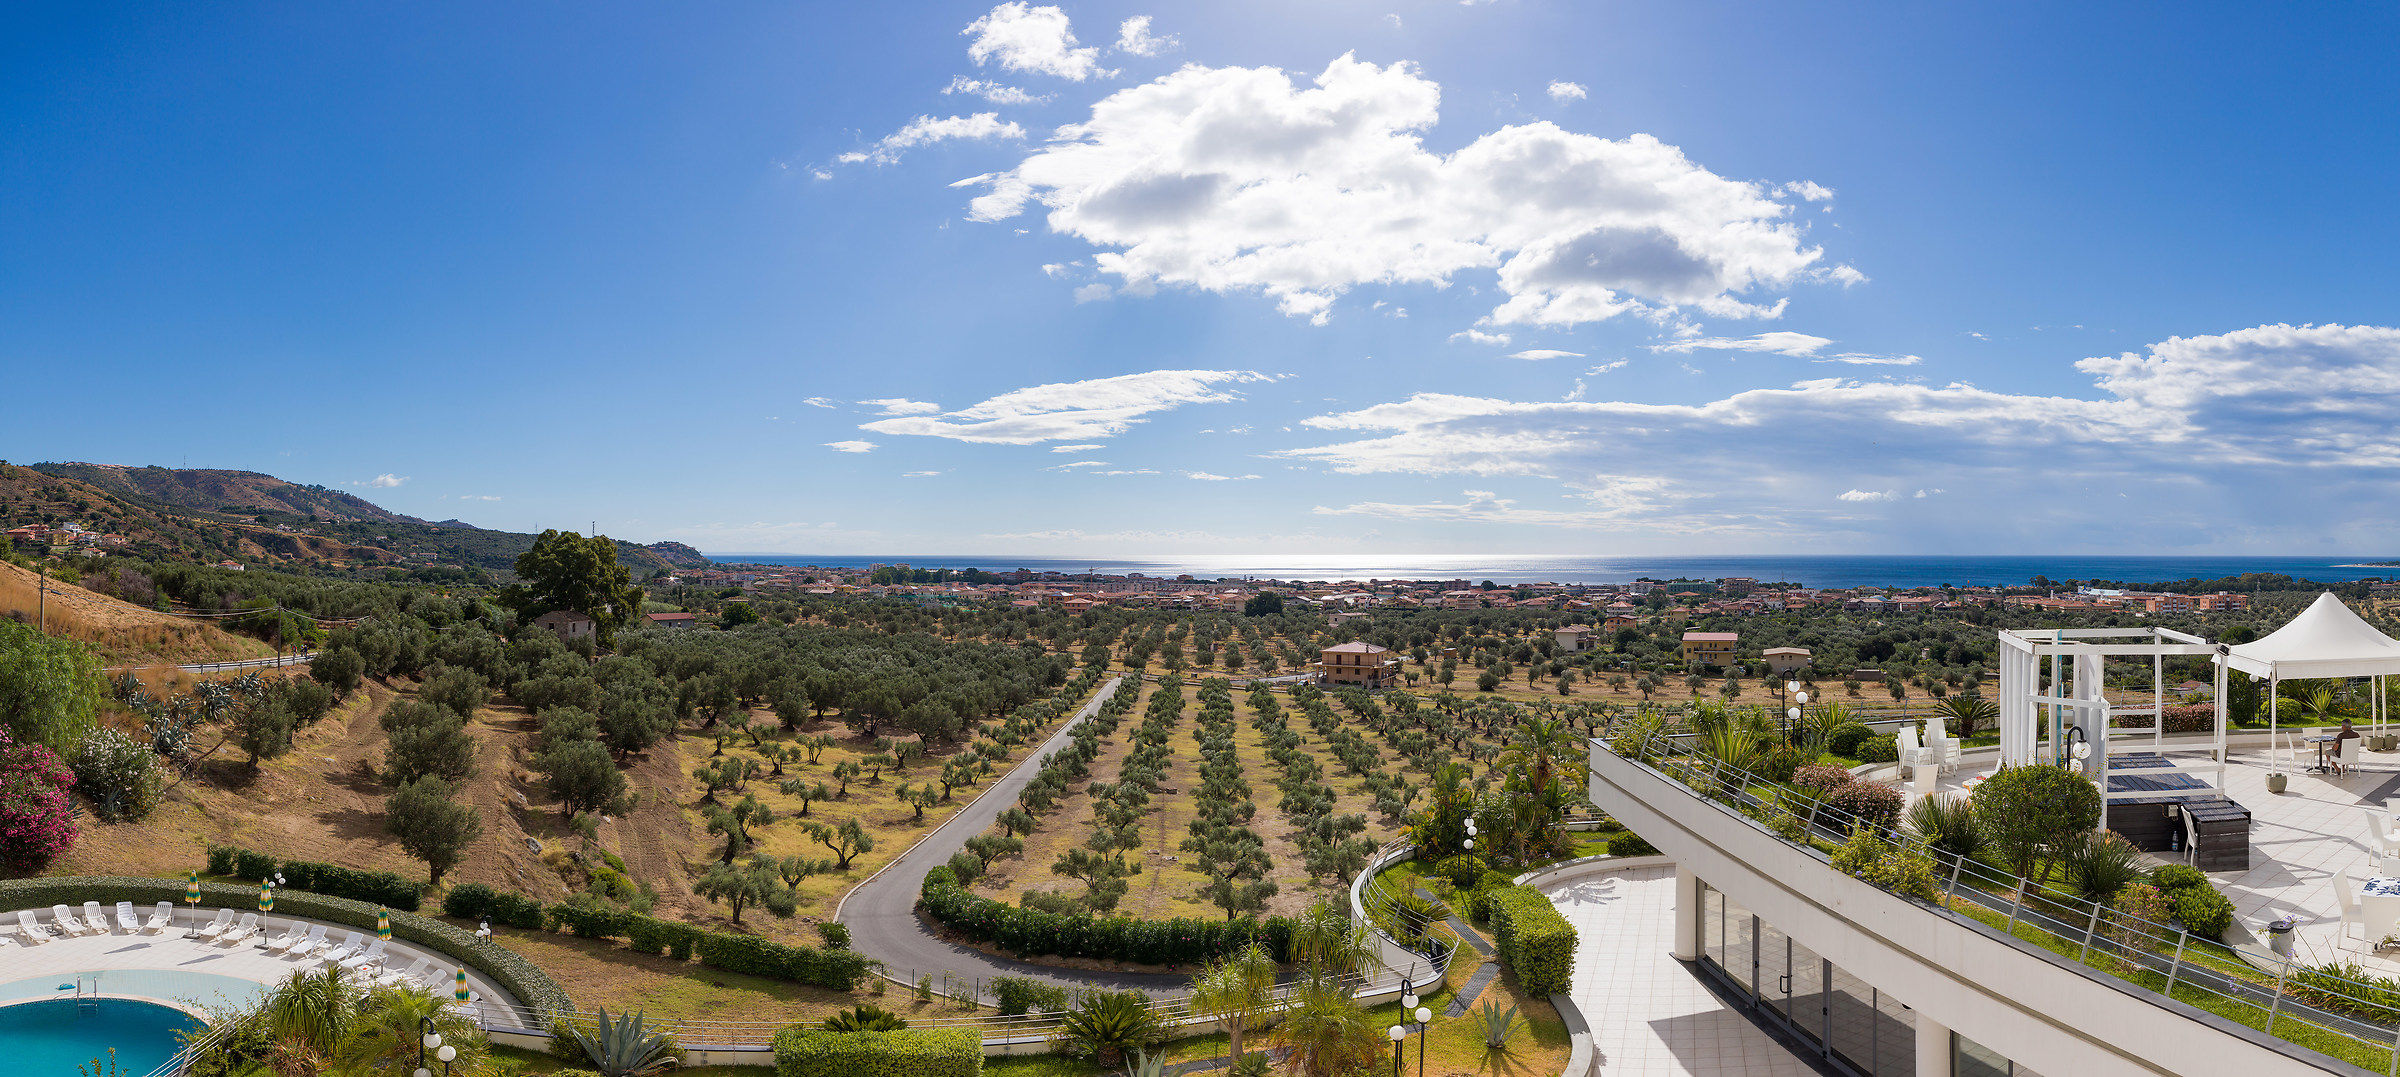 Panorama dall'hotel Mirabeau di Soverato...